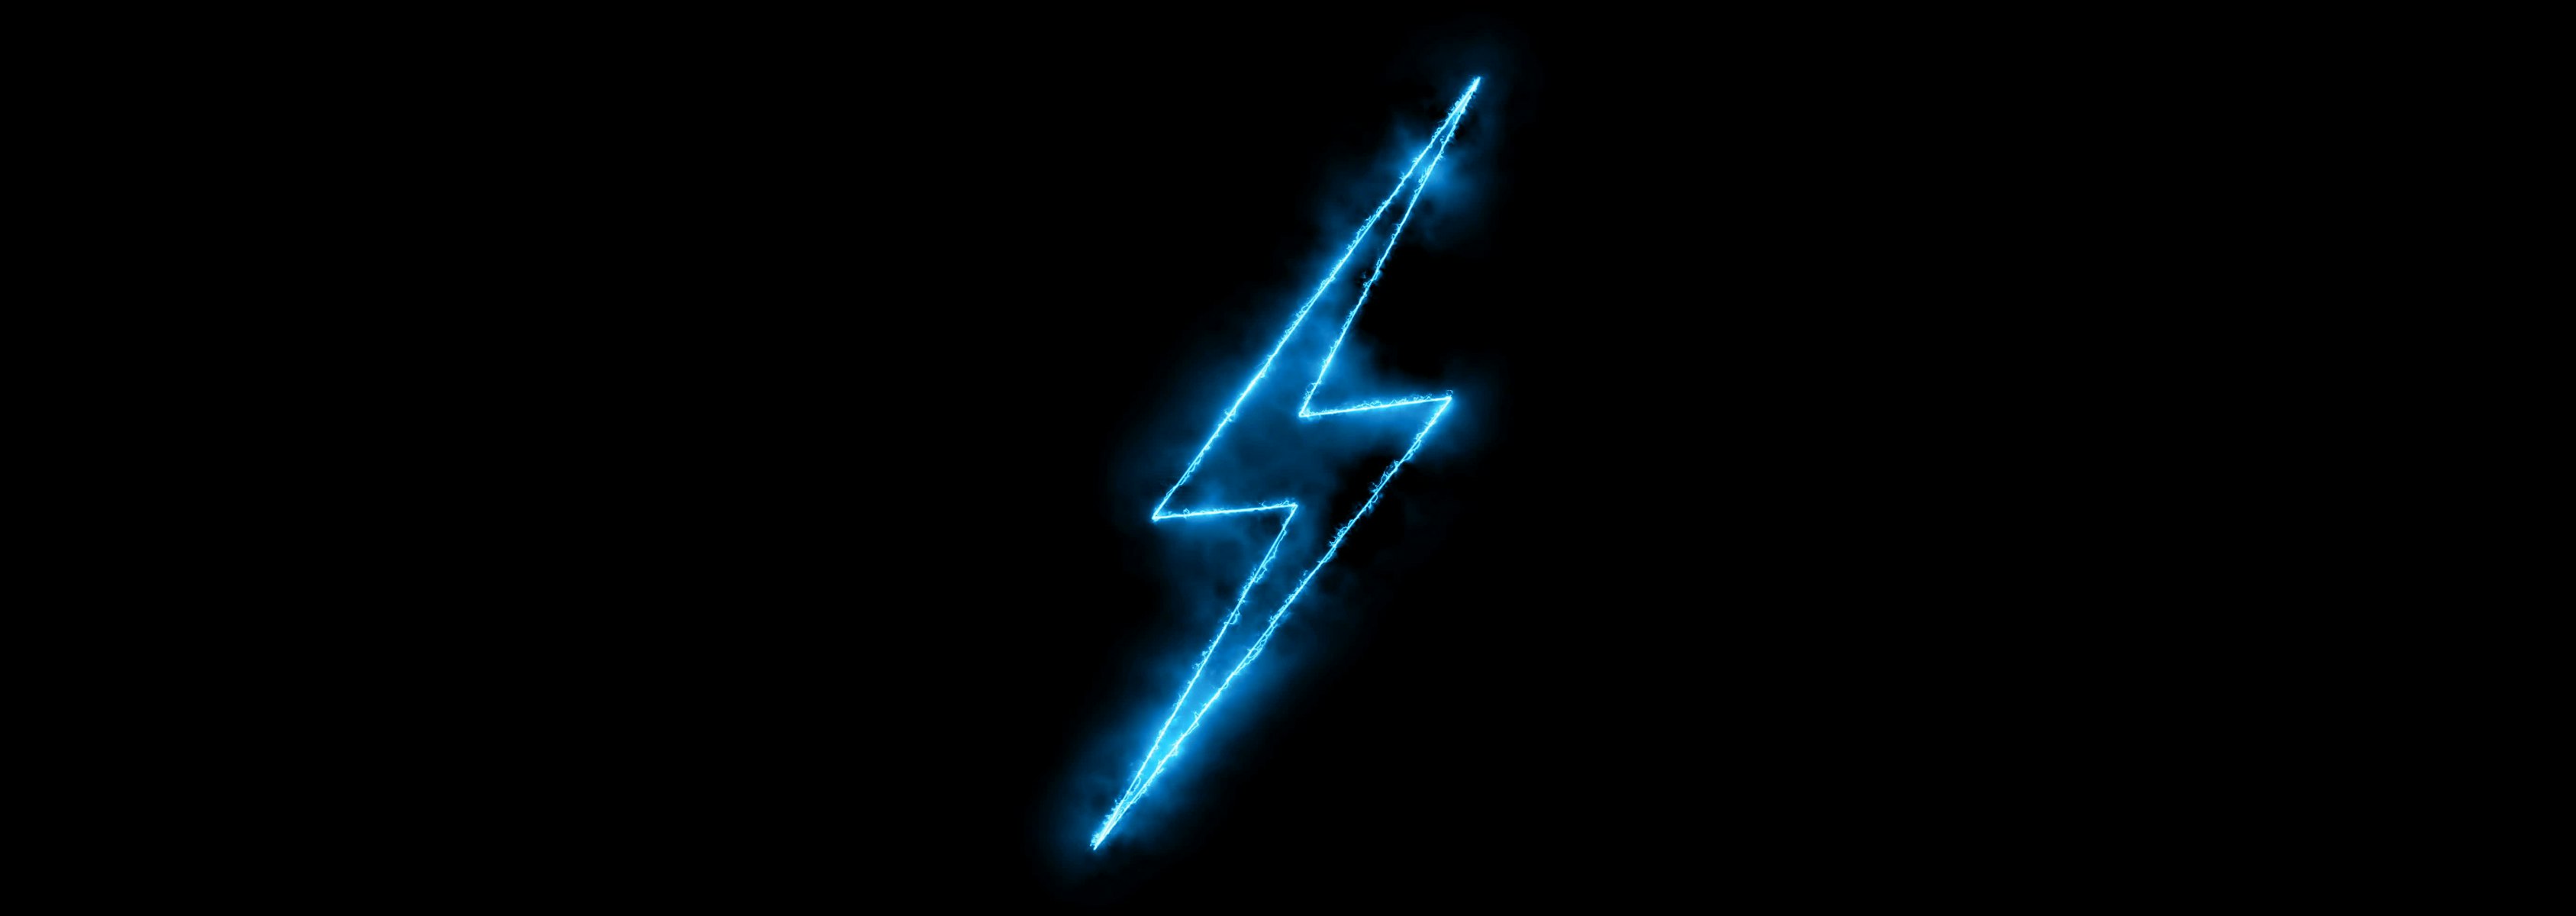 A neon blue lightening bolt